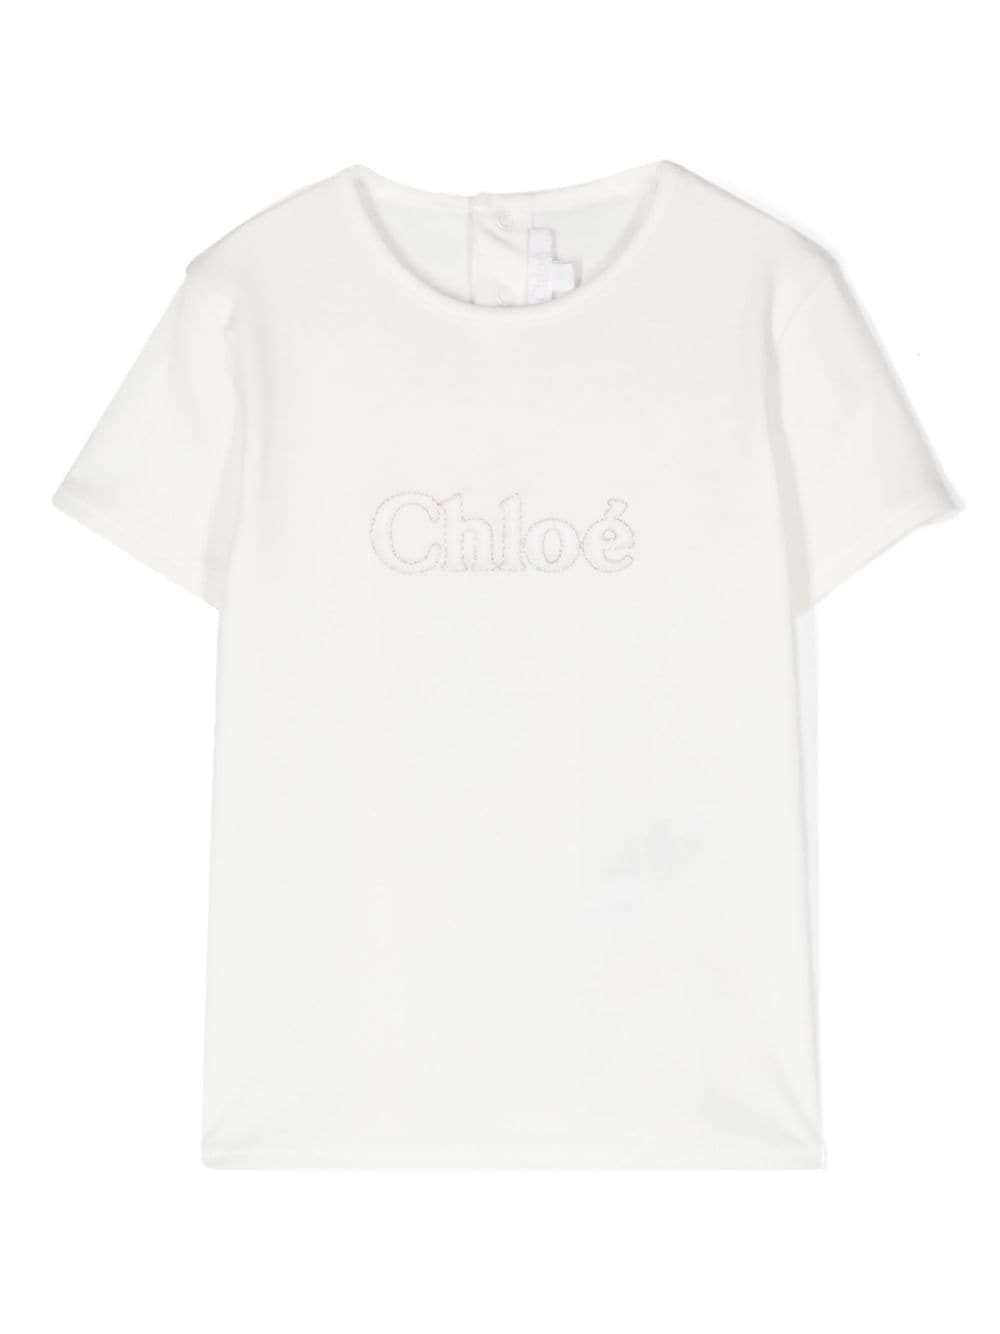 Chloé Kids' Logo刺绣棉t恤 In White